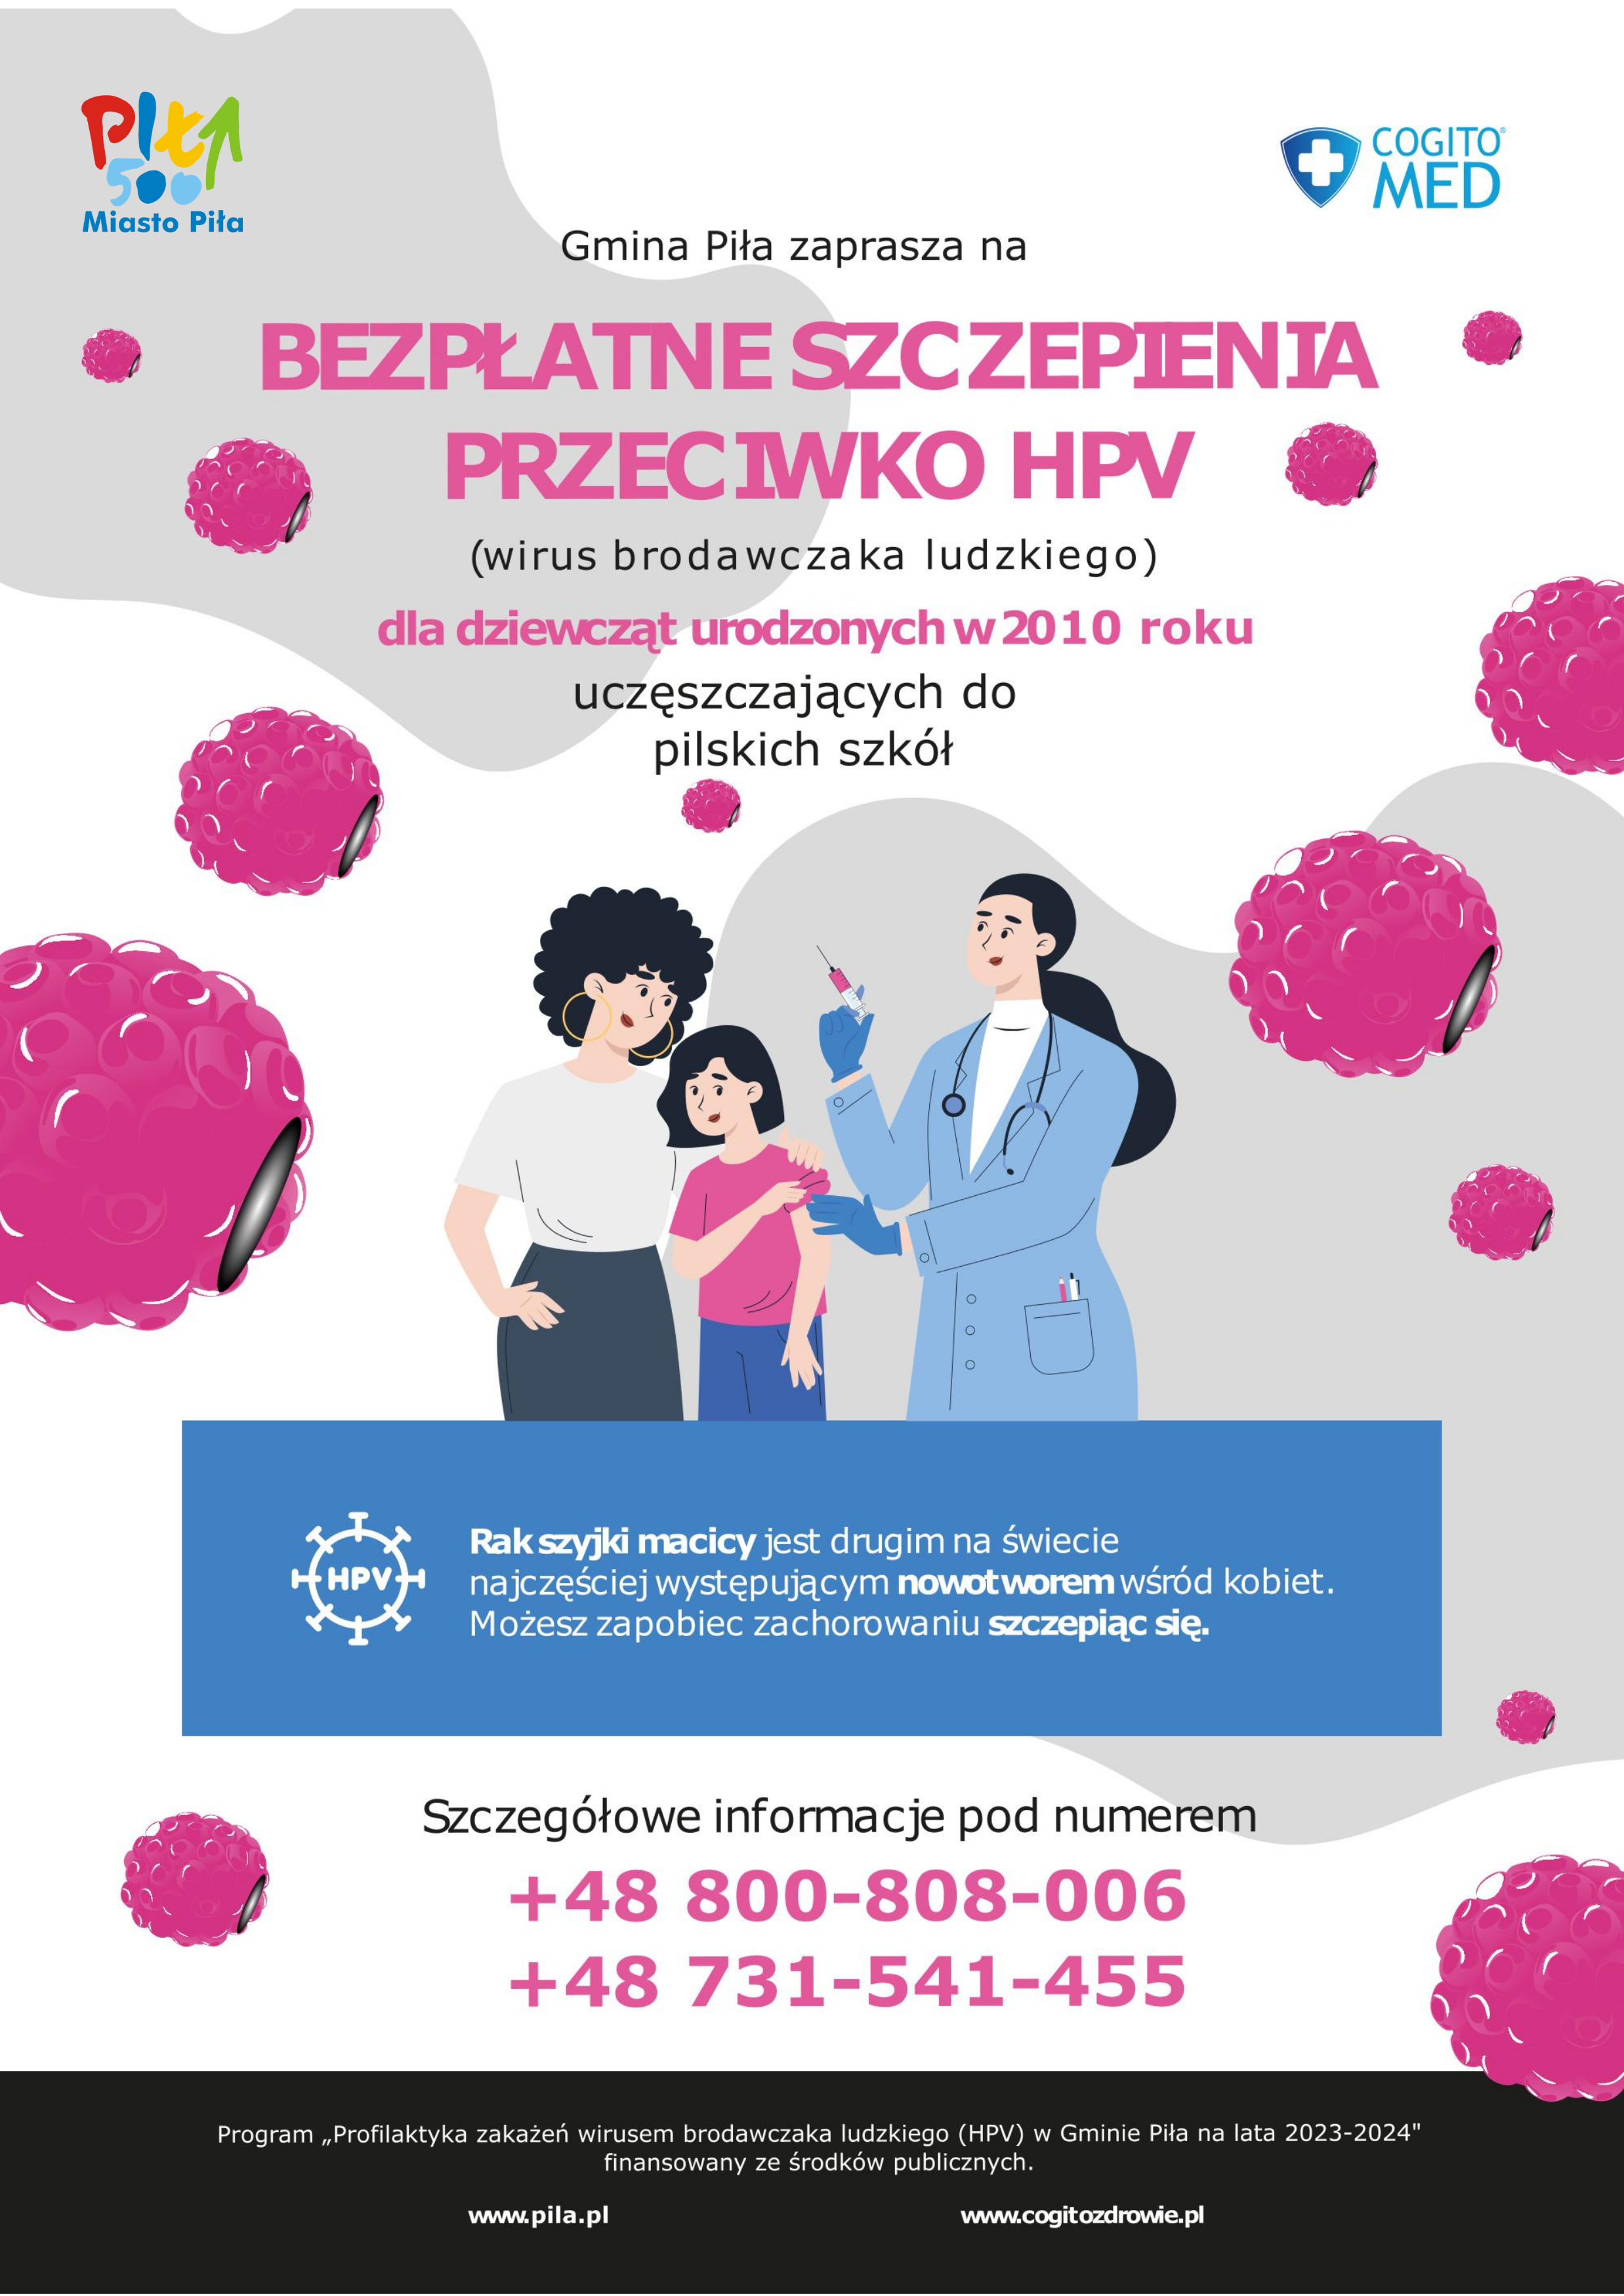 Gmina Piła zaprasza na bezpłatne szczepienia przeciwko HPV (wirus brodawczaka ludzkiego) dla dziewcząt urodzonych w 2010 roku uczęszczających do pilskich szkół. Rak szyjki macicy jest drugim na świecie najczęściej występującym nowotworem wśród kobiet. Możesz zapobiec zachorowaniu szczepiąc się. Szczegółowe informacje: 800 808 006, 731 541 455